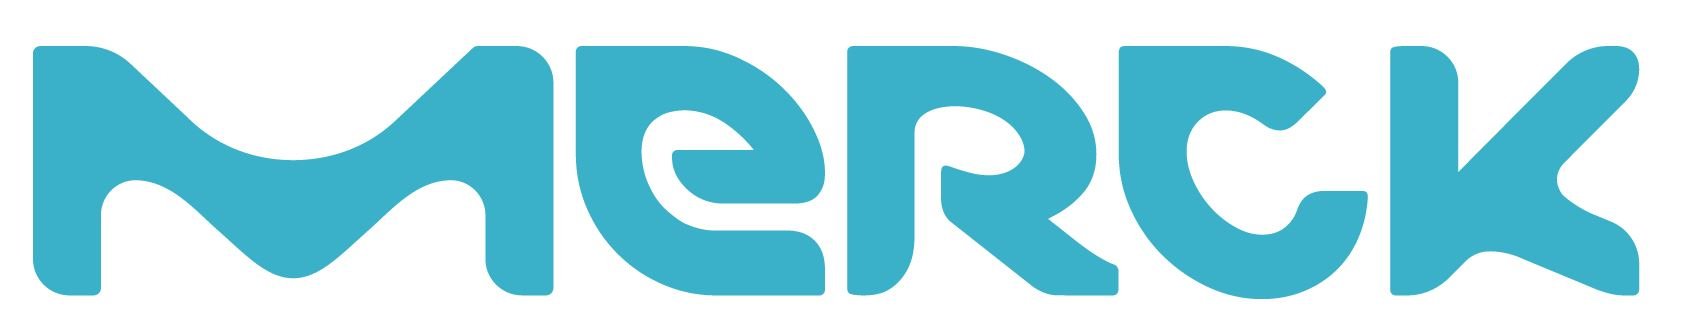 Merck Logo.JPG